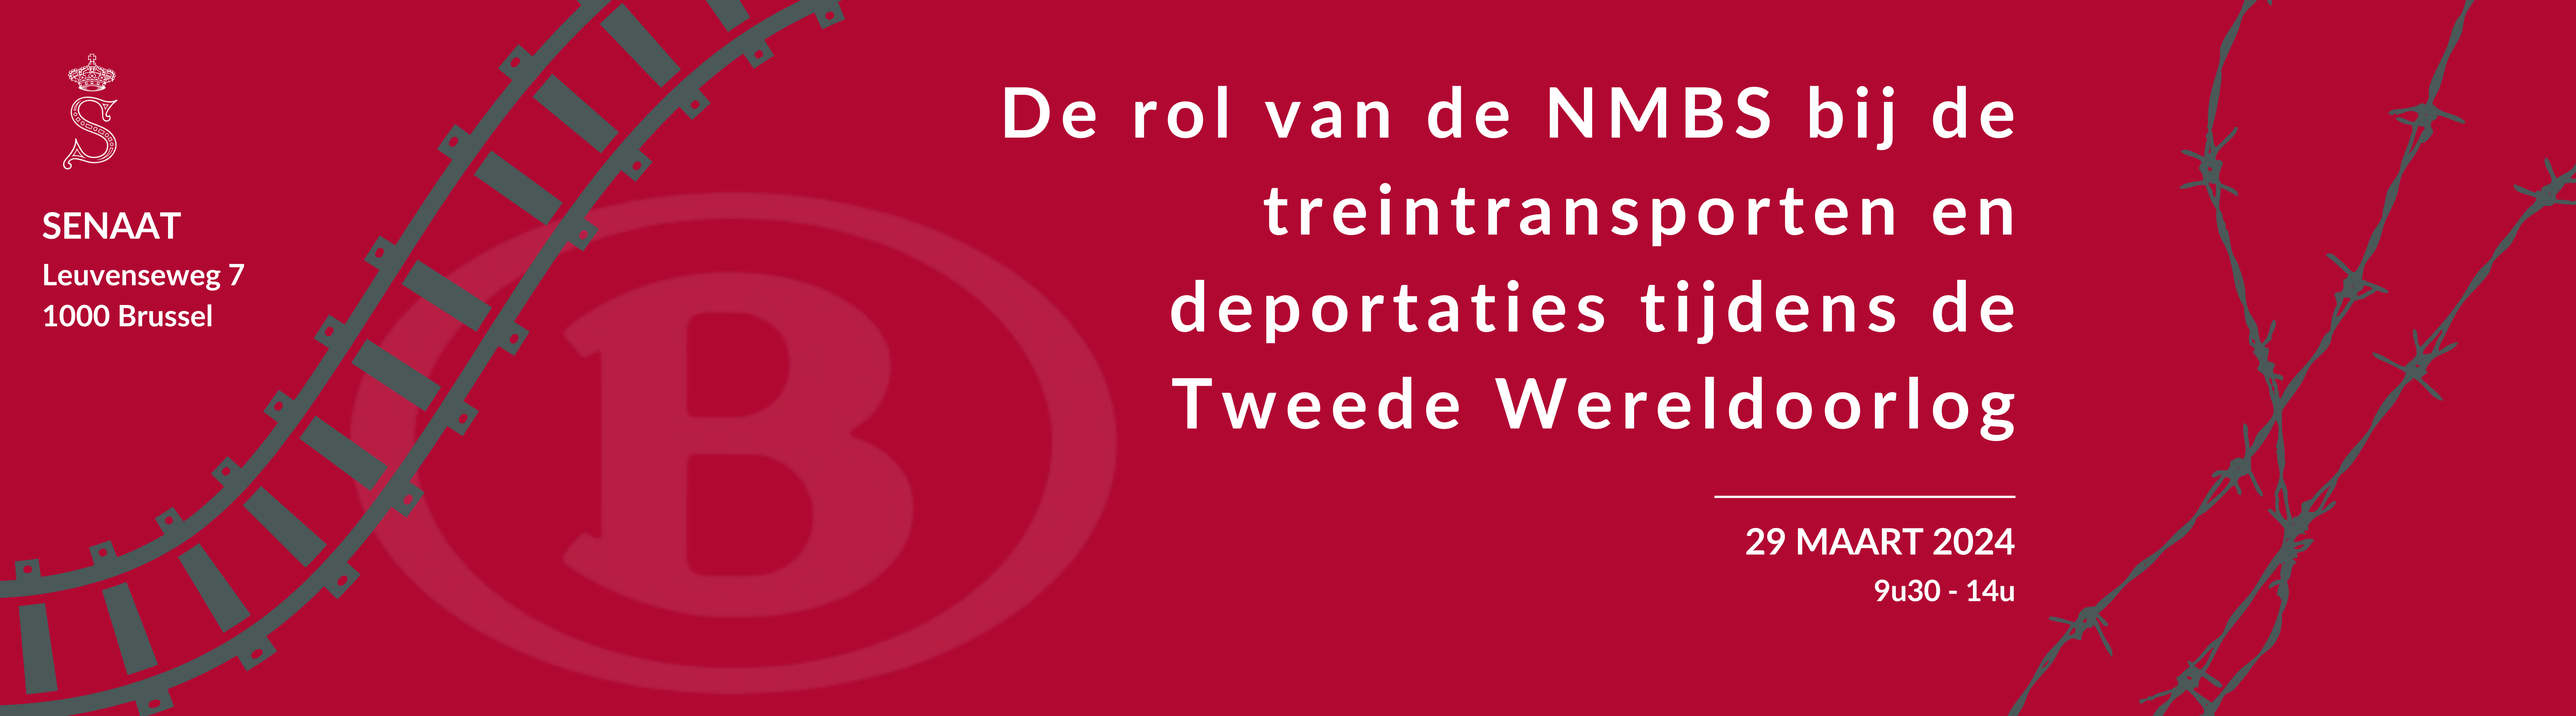 Colloquium - De rol van de NMBS bij de treintransporten en deportaties tijdens de Tweede Wereldoorlog - 29/03/2024